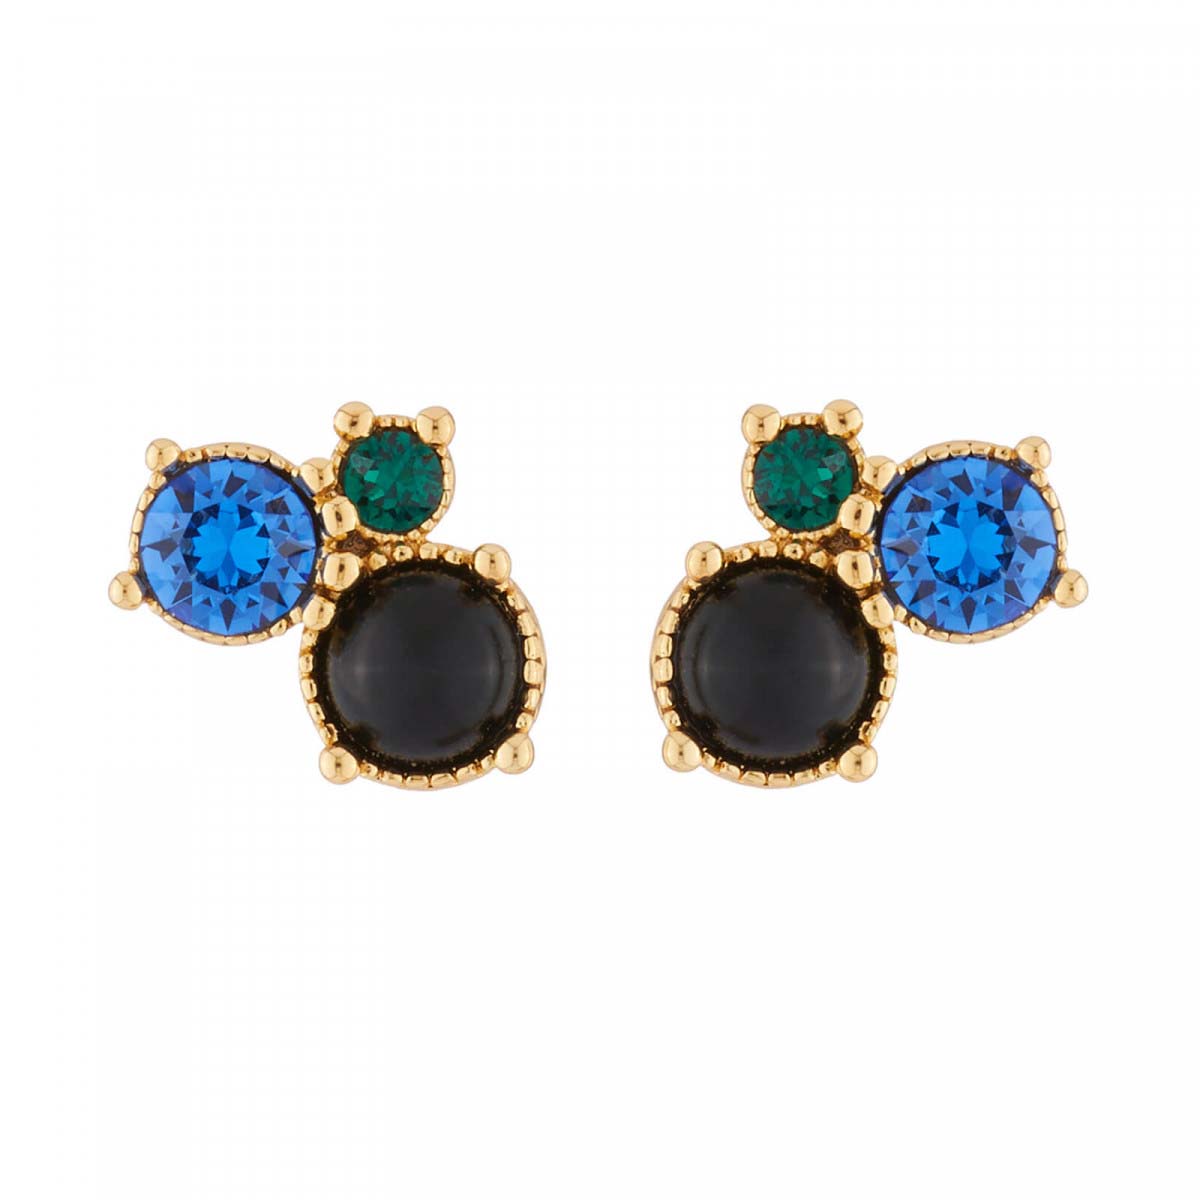 Les Néréides Paris 3 Blue and Green stud earrings